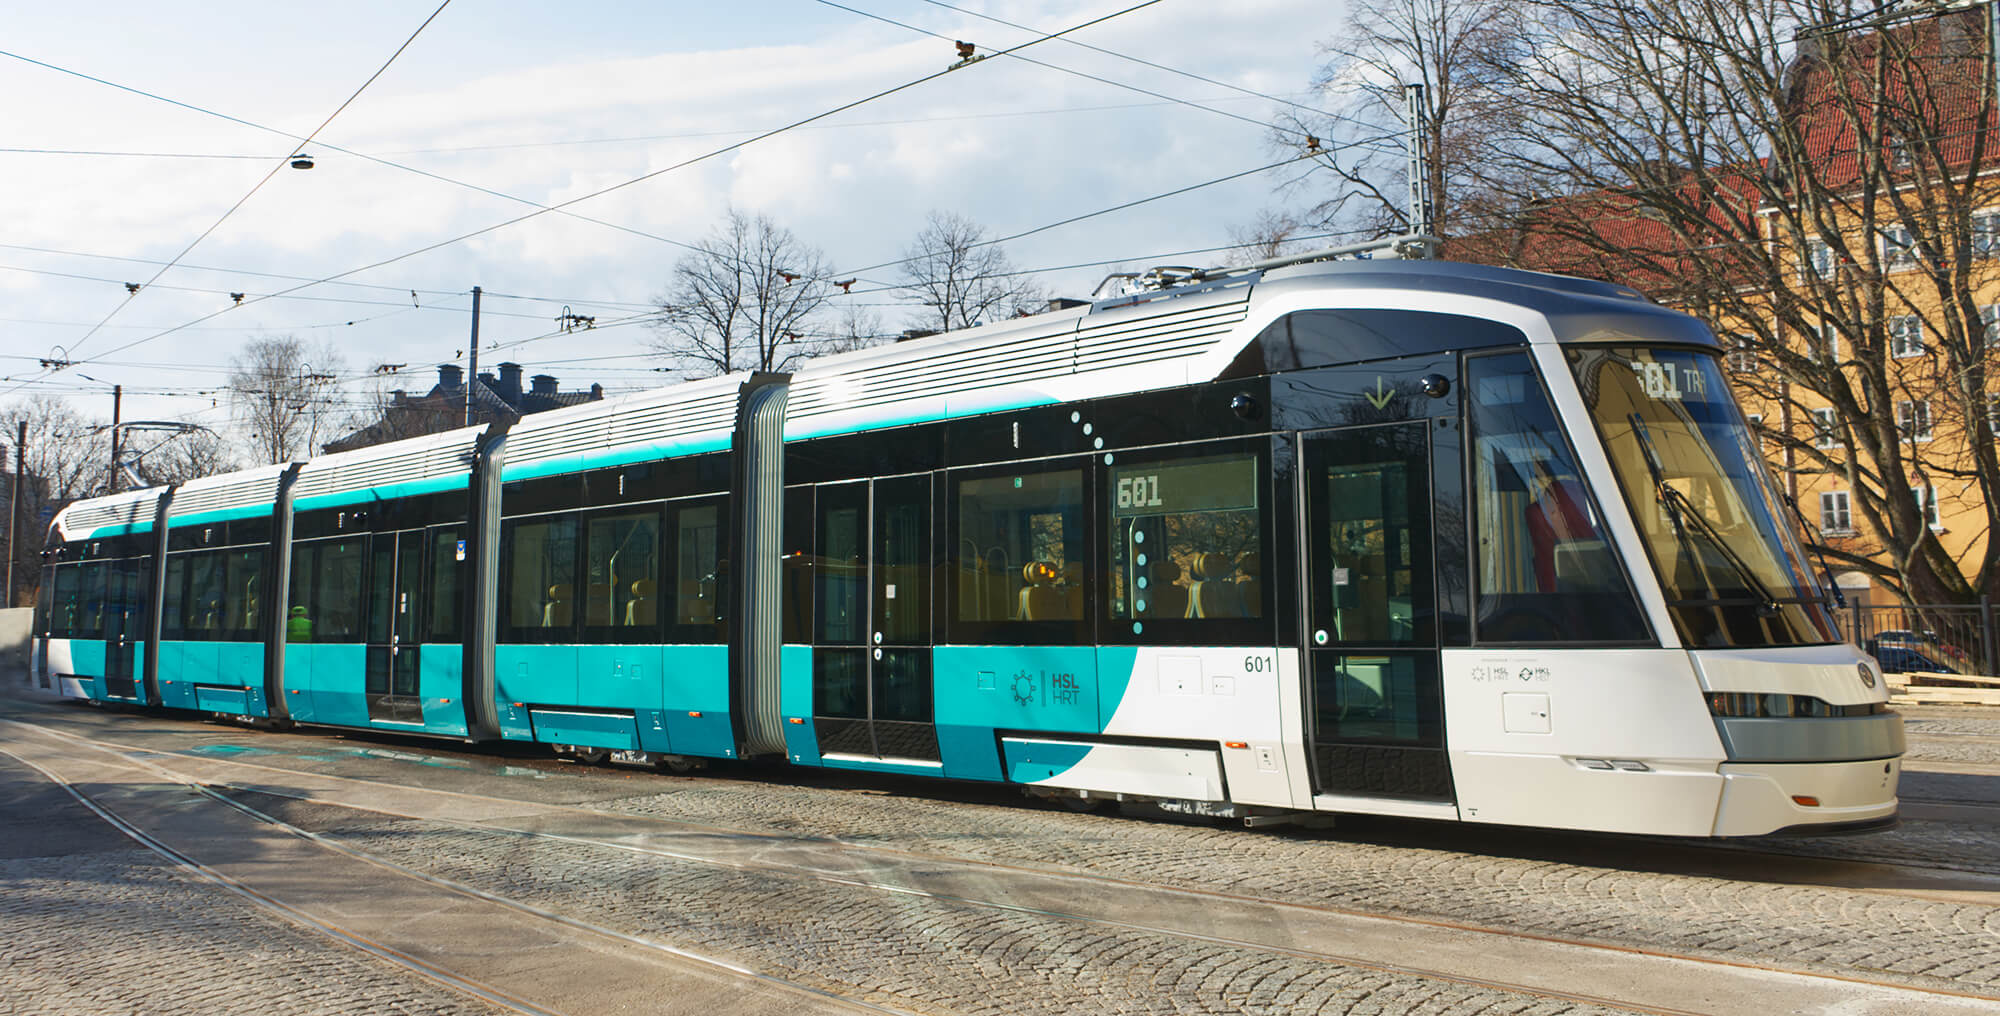 Tram in Helsinki street